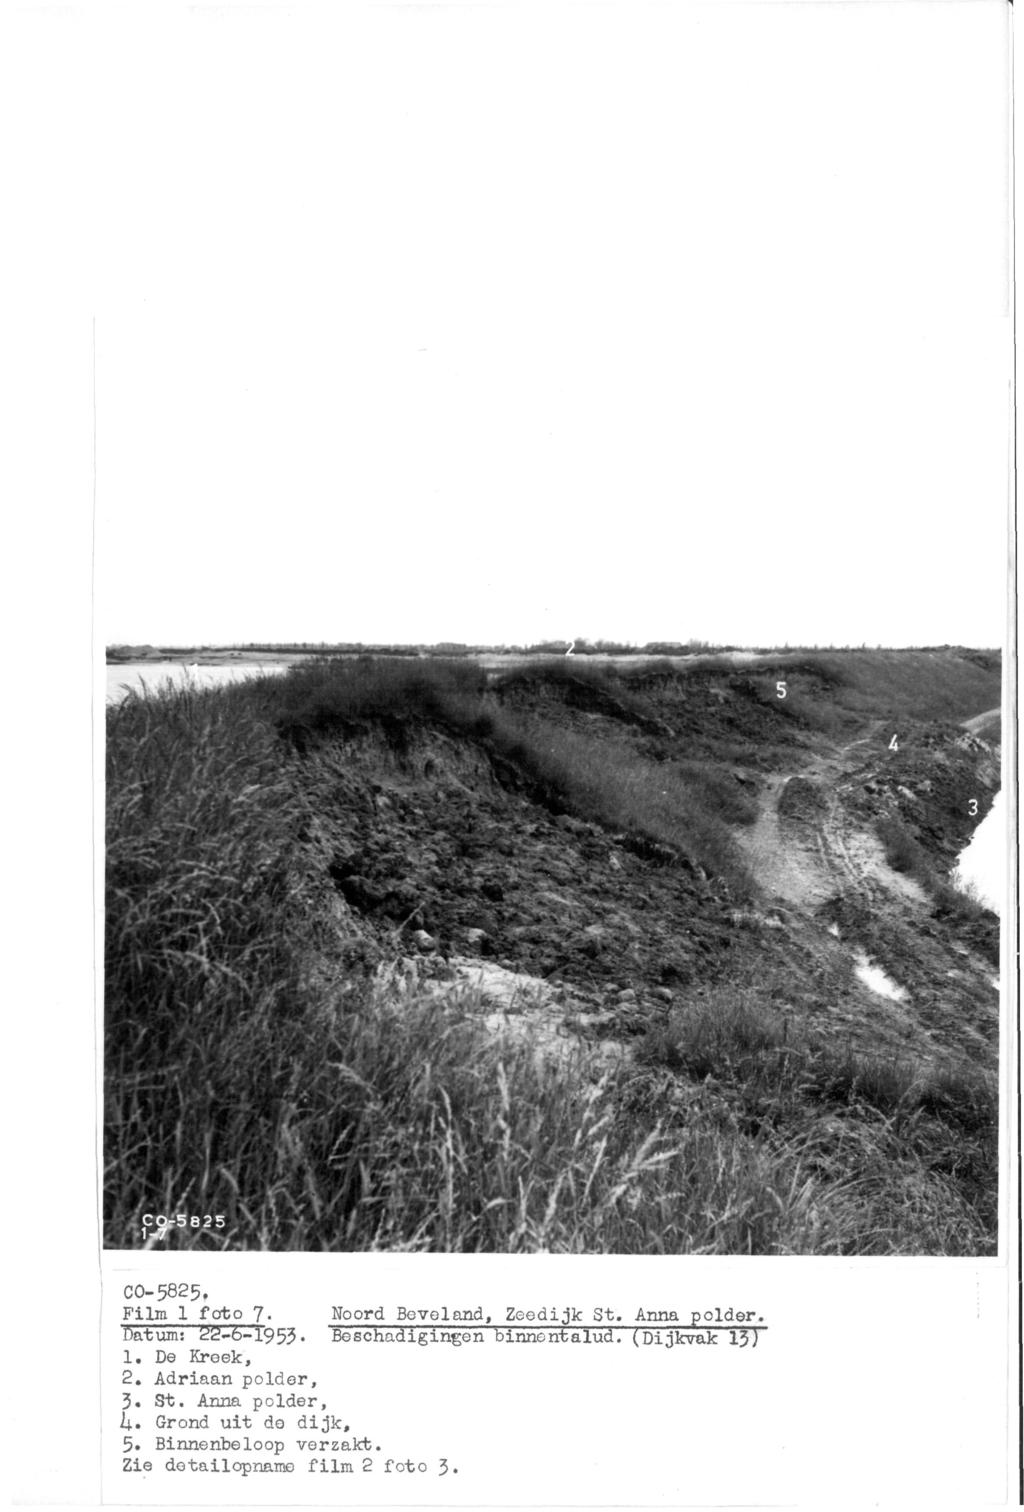 co-5825. Film 1 foto 7. Noord Beveland, Zeedijk St. Anna polder. Datum: 22-6-1953. Beschadigingen binnentalud. (Dijkvak 13) 1.